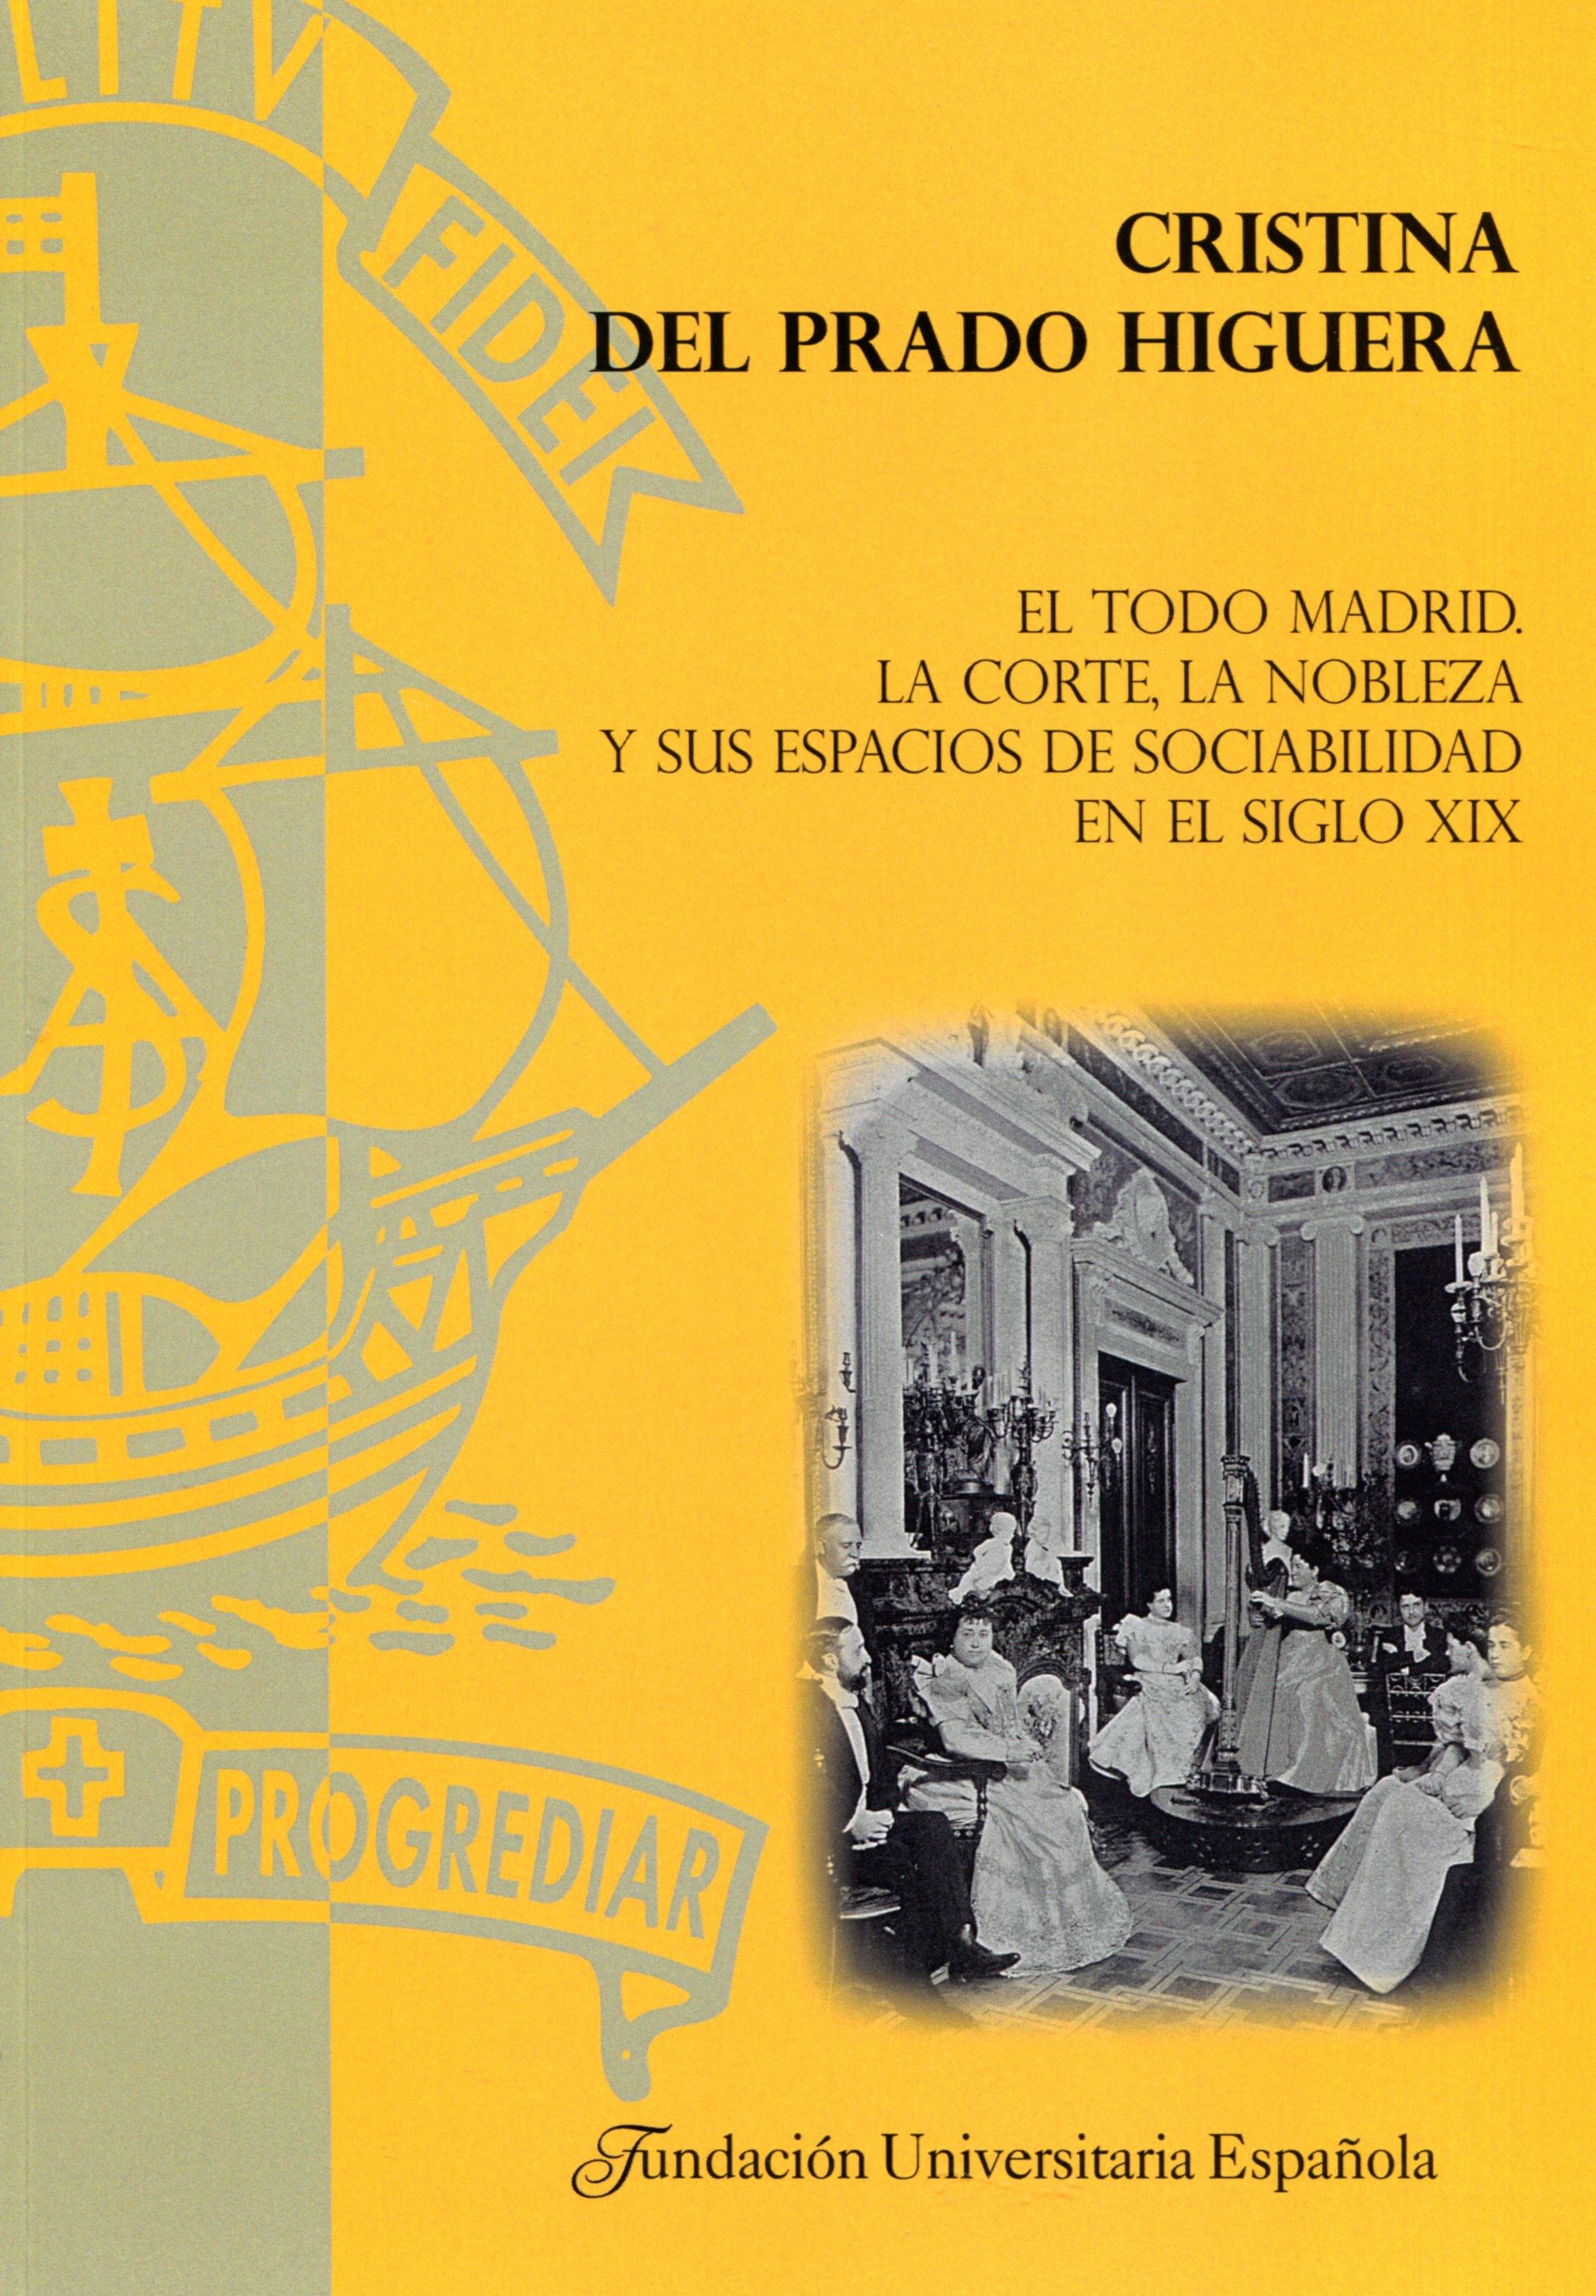 El Todo Madrid "La Corte, la nobleza y sus espacios de sociabilidad en el siglo XIX"